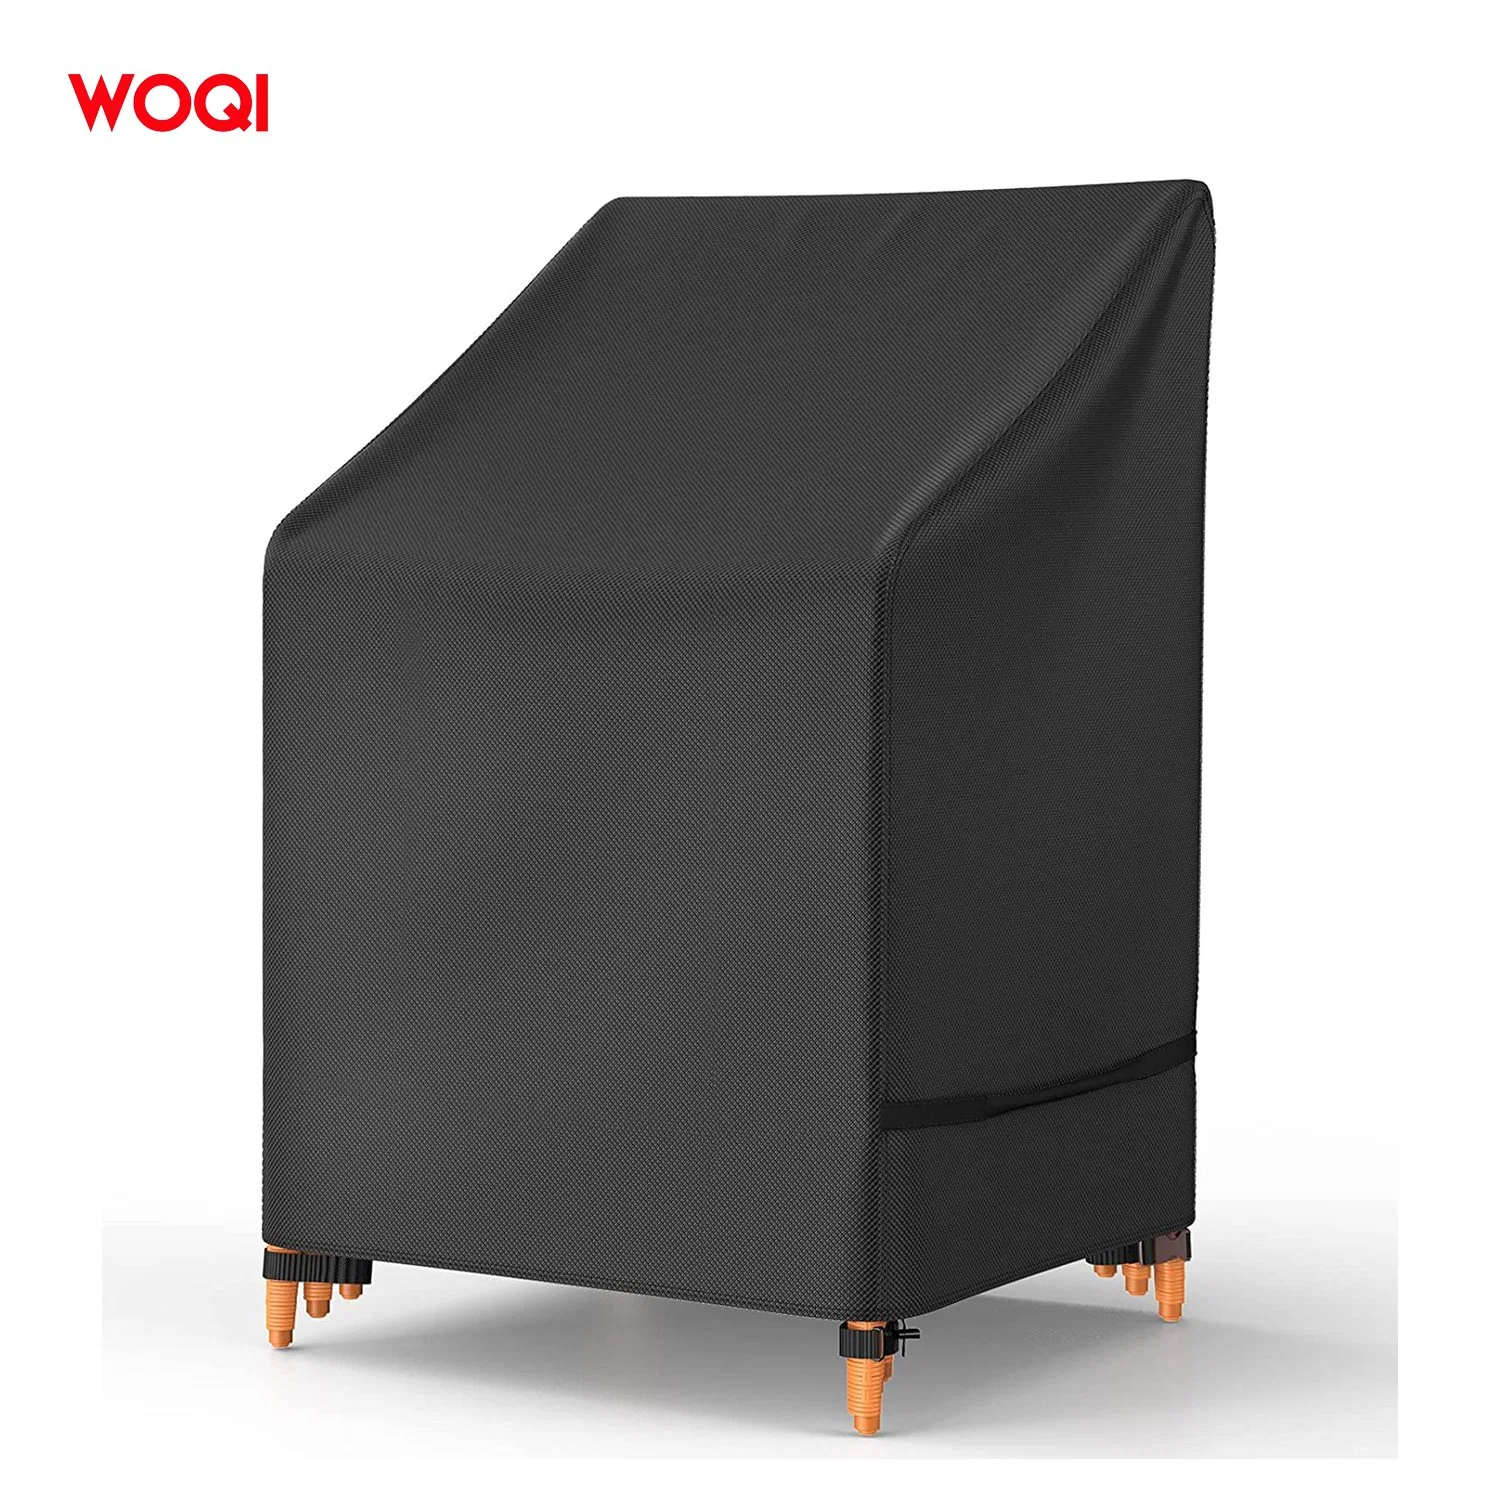 Woqi Outdoor Chair Cover kann für wasserdichte Outdoor gestapelt werden Möbelabdeckung